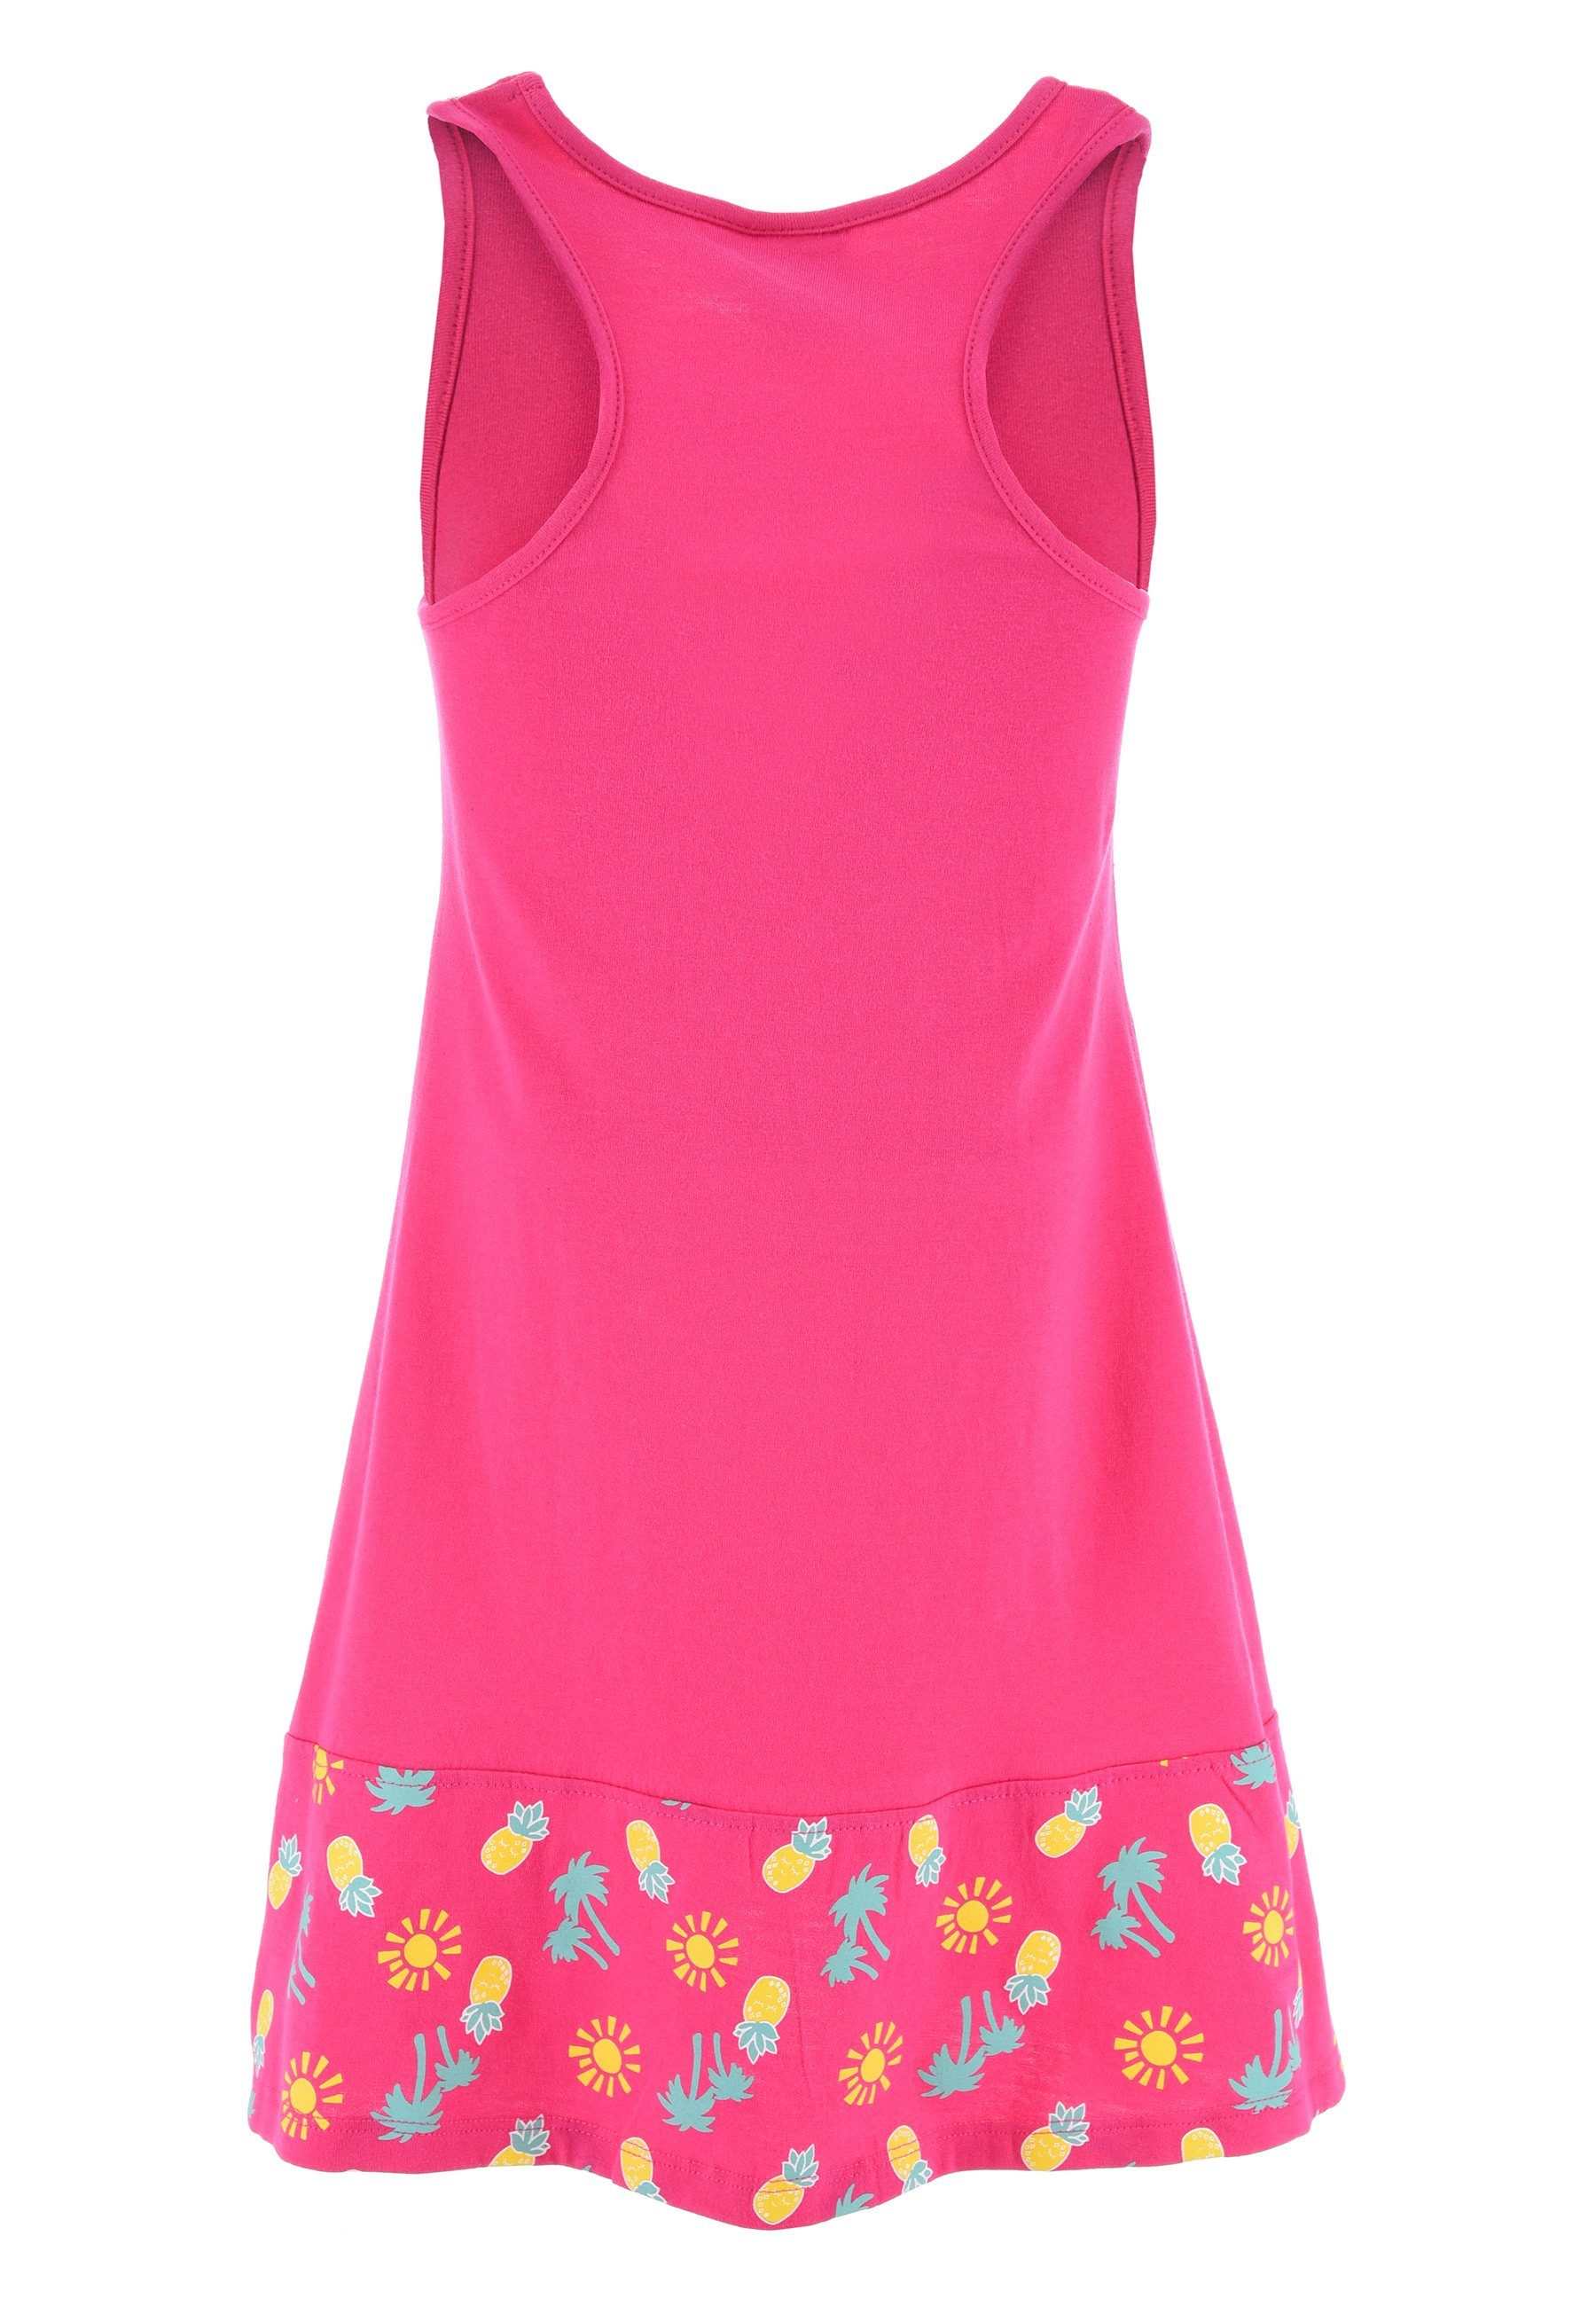 Mädchen Ärmellos Pink Sommerkleid Strand-Kleid Disney Mouse Sommer-Kleid Minnie